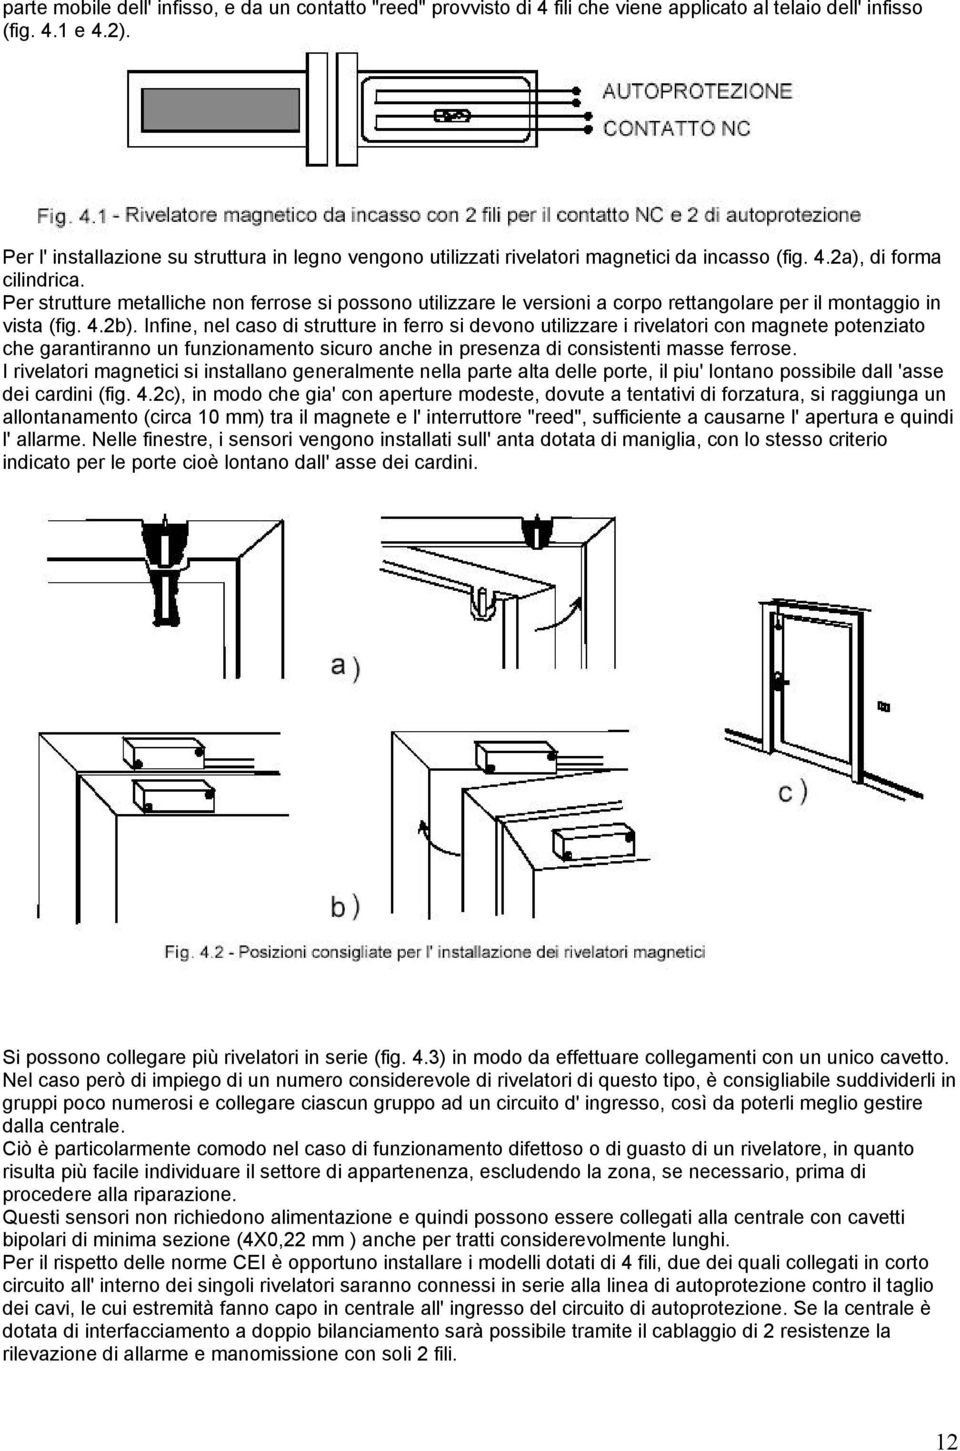 Per strutture metalliche non ferrose si possono utilizzare le versioni a corpo rettangolare per il montaggio in vista (fig. 4.2b).